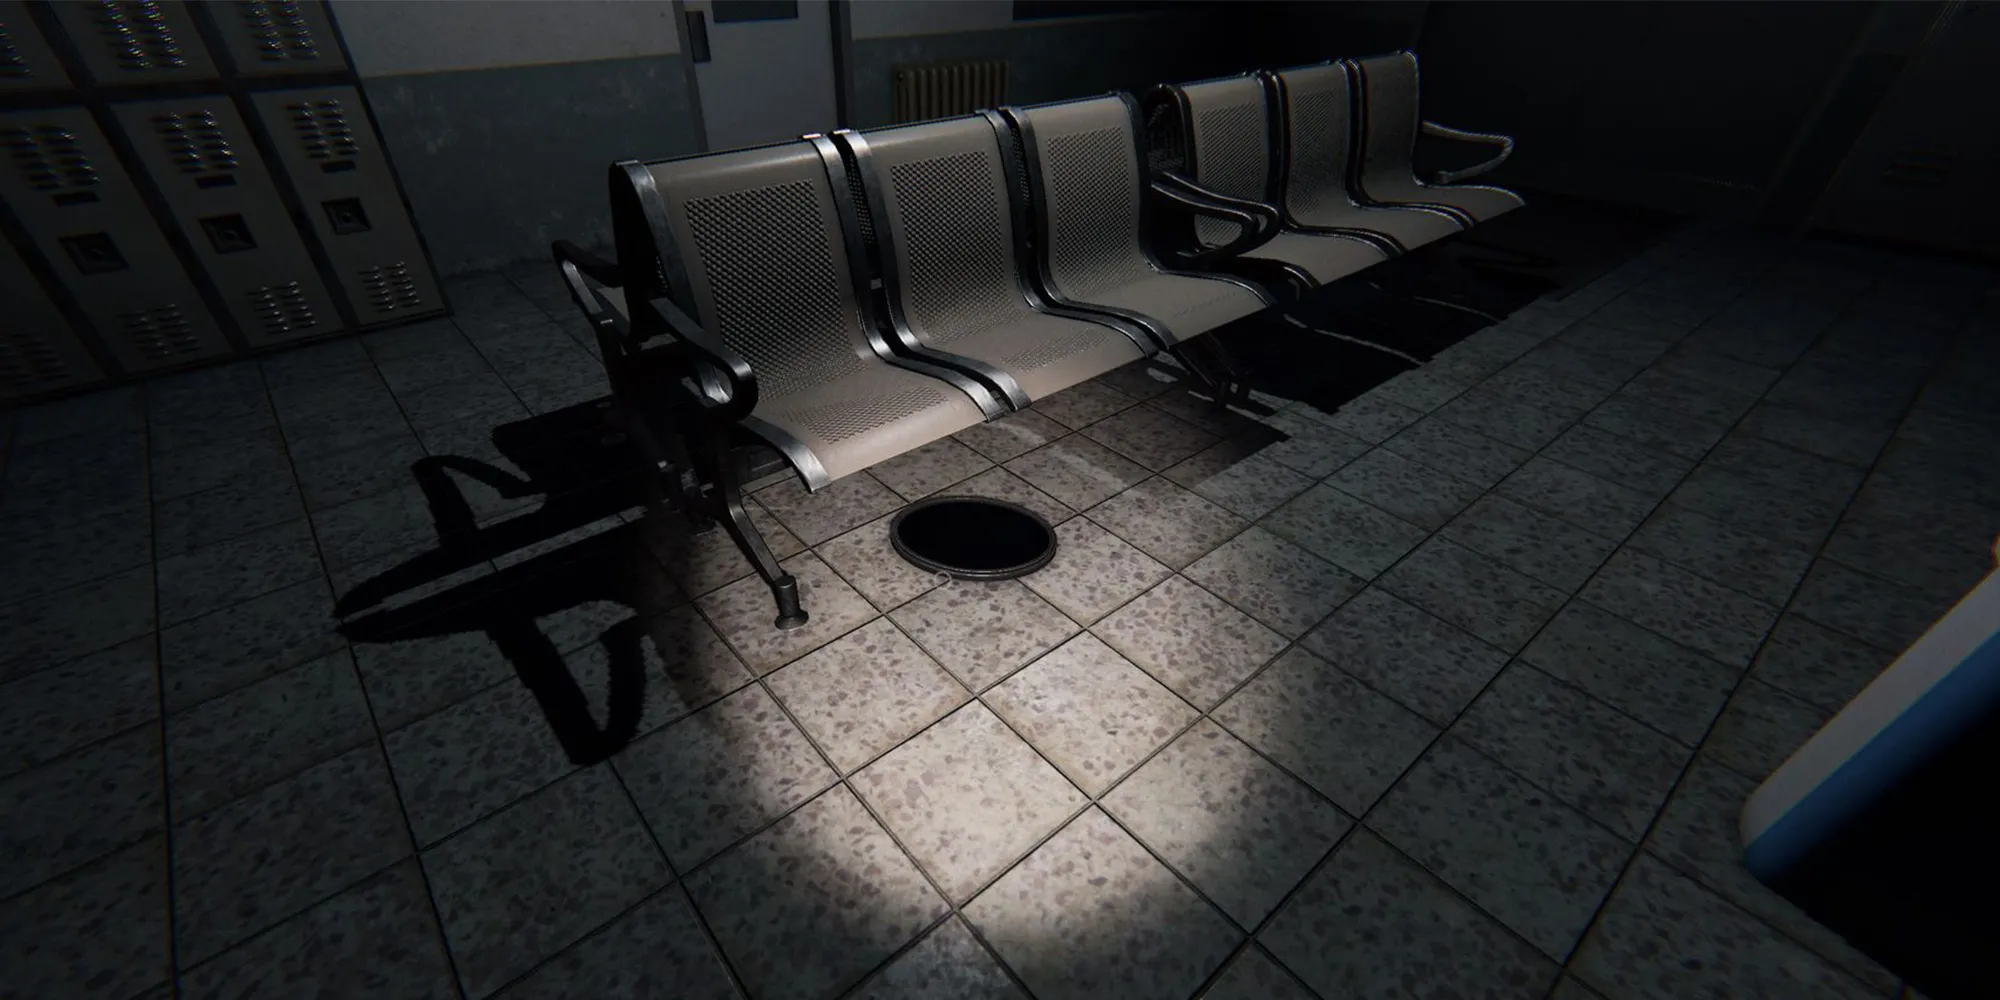 图片展示了Phasmophobia中监狱的地板下一排白色椅子上的一个闹鬼镜子。